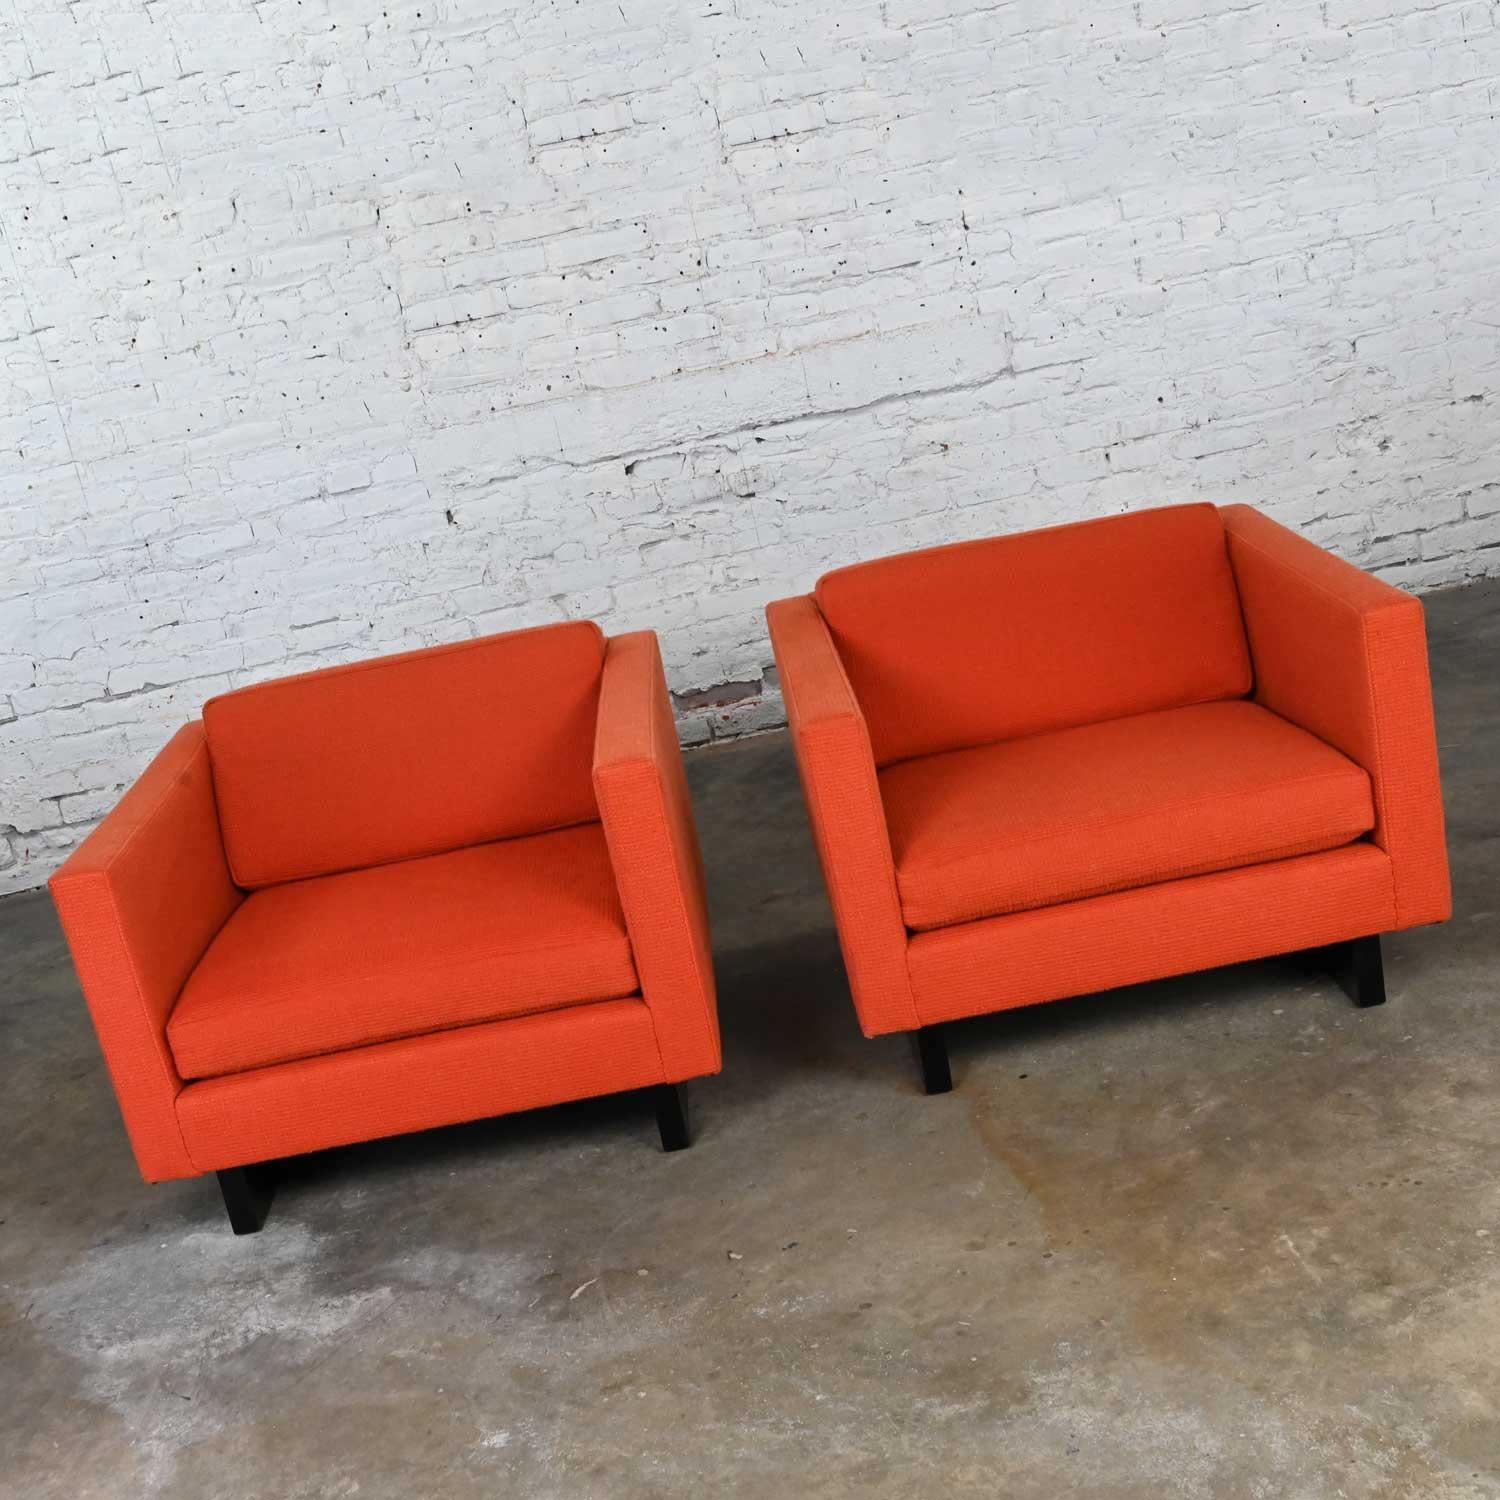 Magnifique paire de chaises club 1571 de style tuxedo orange avec piétement traîneau peint en noir, MCM (a.k.a. Mid-Century Modern) à Modern Harvey Probber. Vintage By, gardant à l'esprit qu'ils sont vintage et pas nouveau donc aura des signes